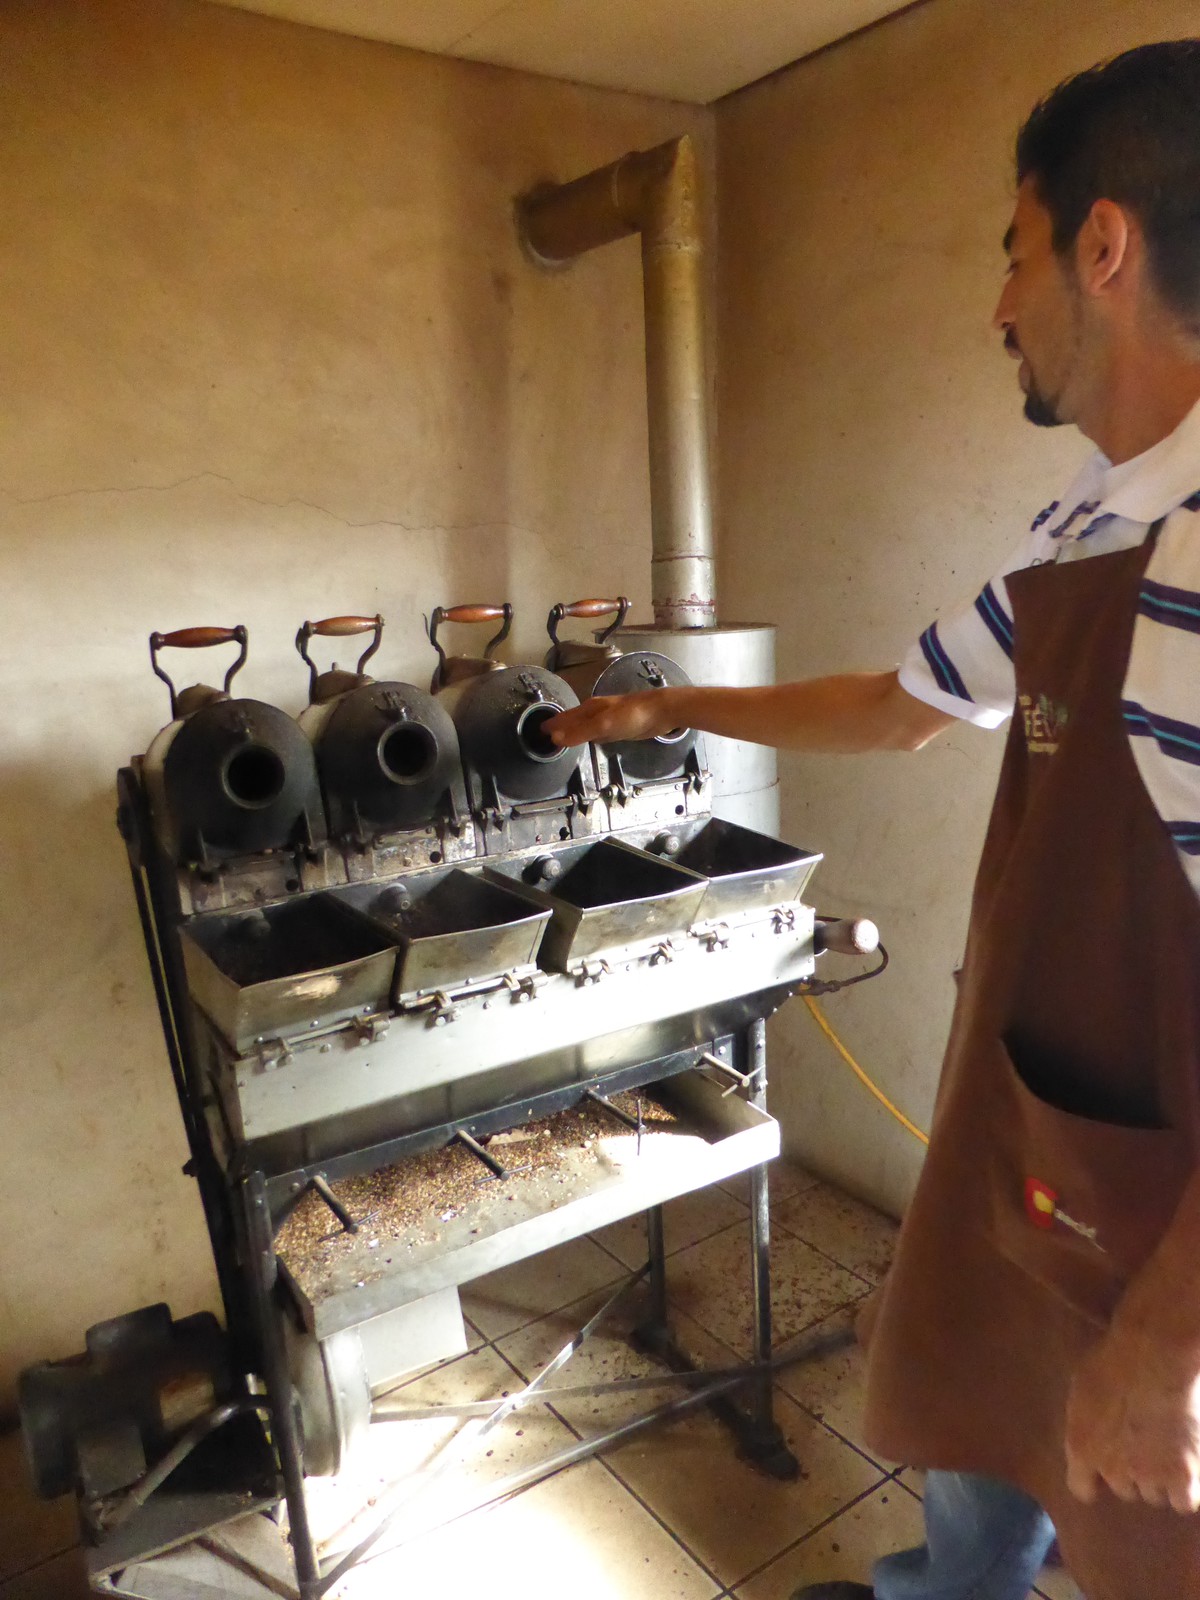 Alexander roasting samples of coffee beans